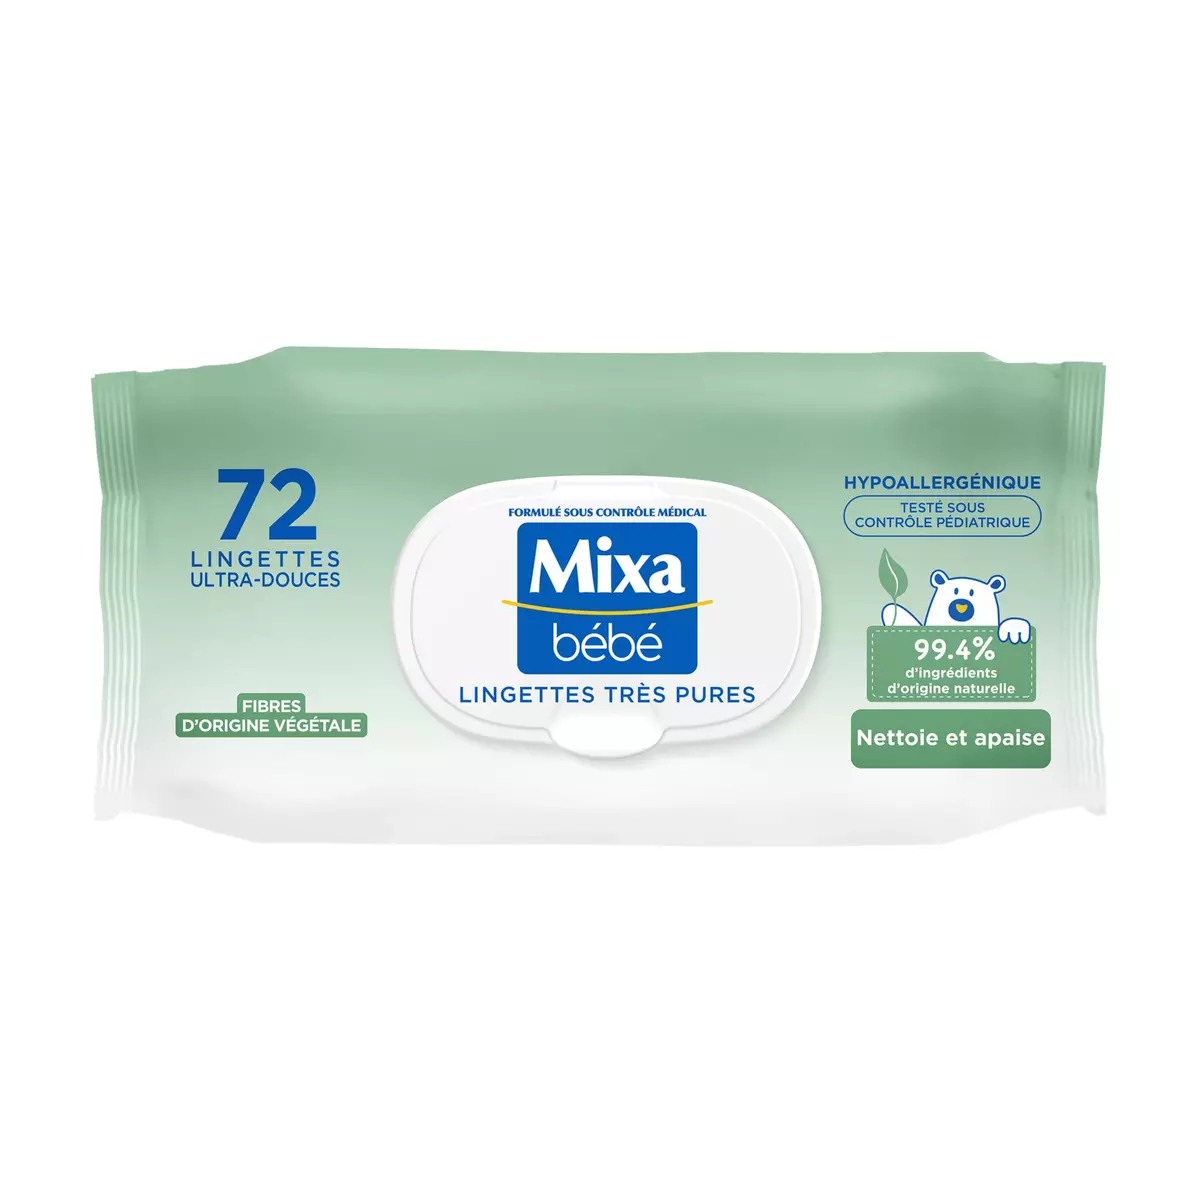 MIXA BEBE Lingettes ultra-douces hypoallergénique 72 lingettes